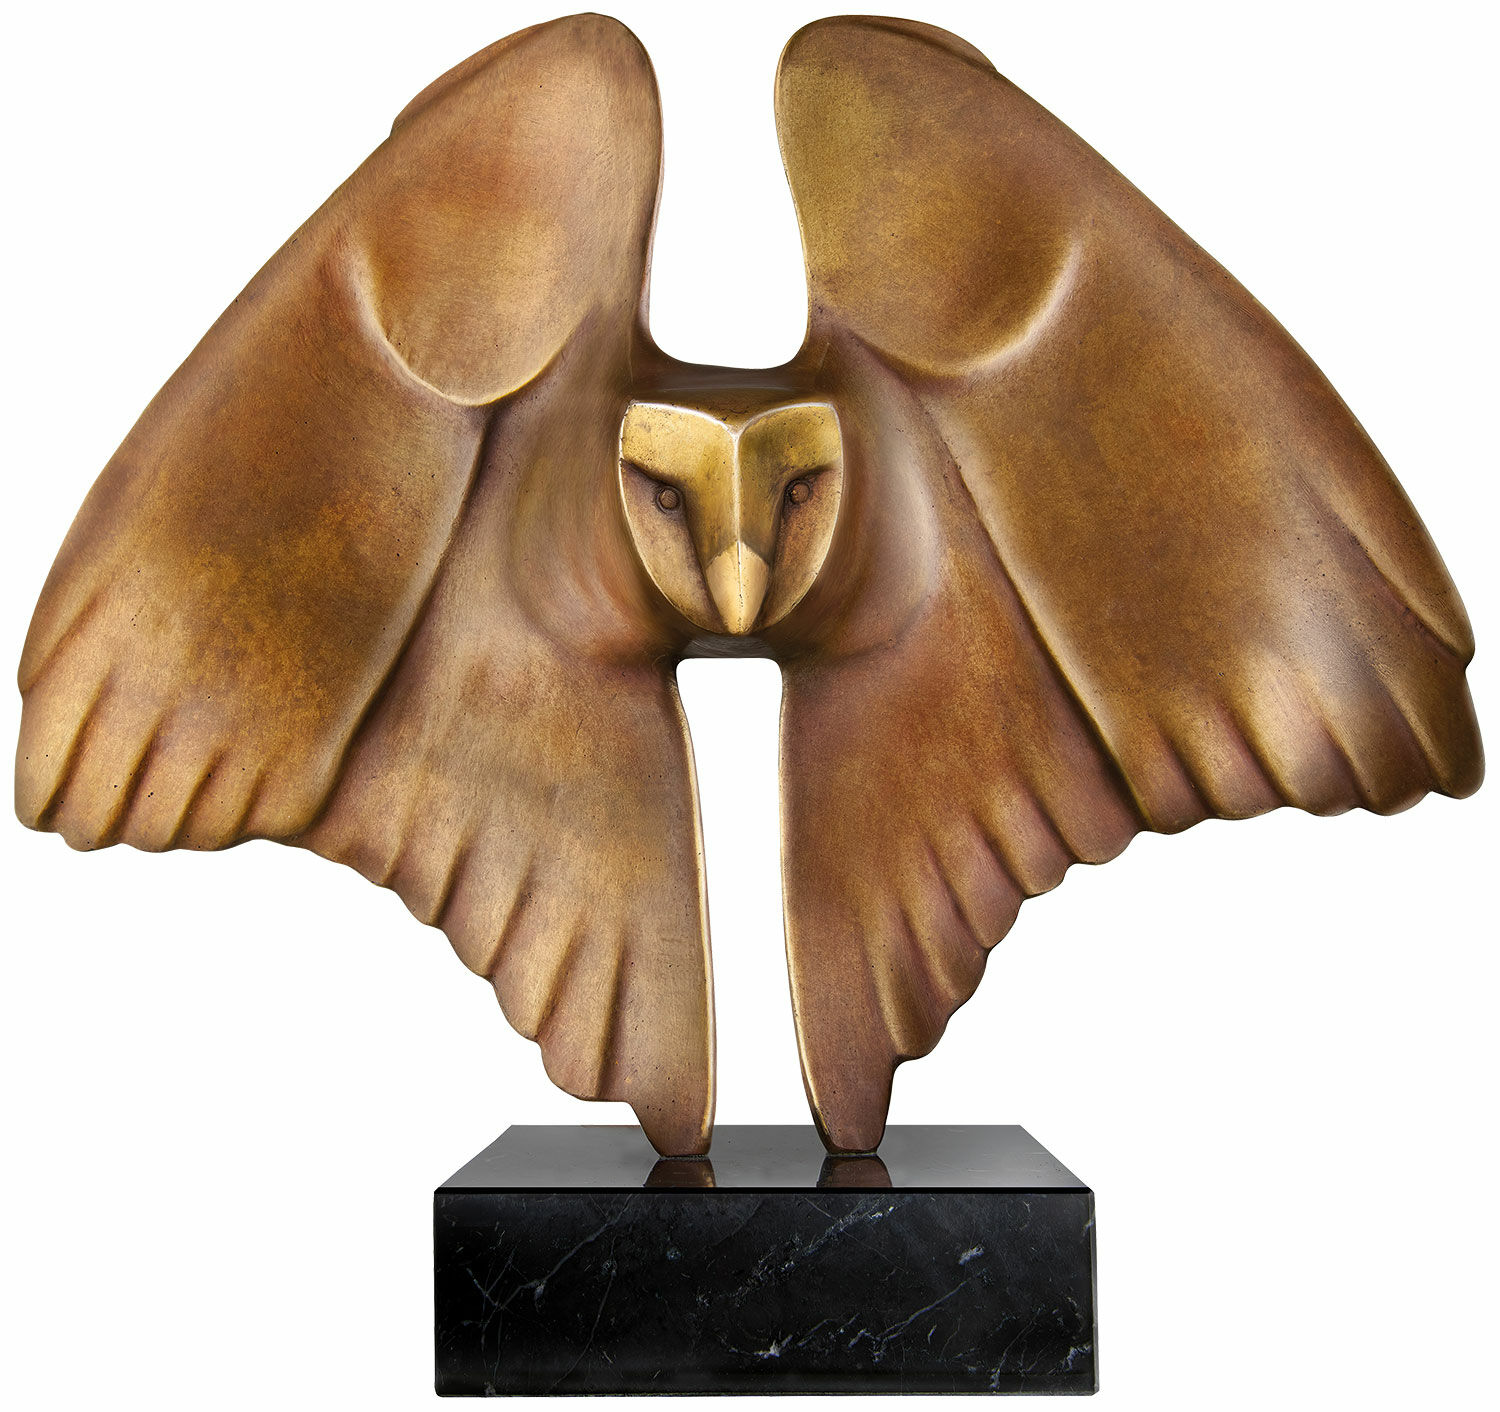 Skulptur "Flyvende ugle", bronze von Evert den Hartog